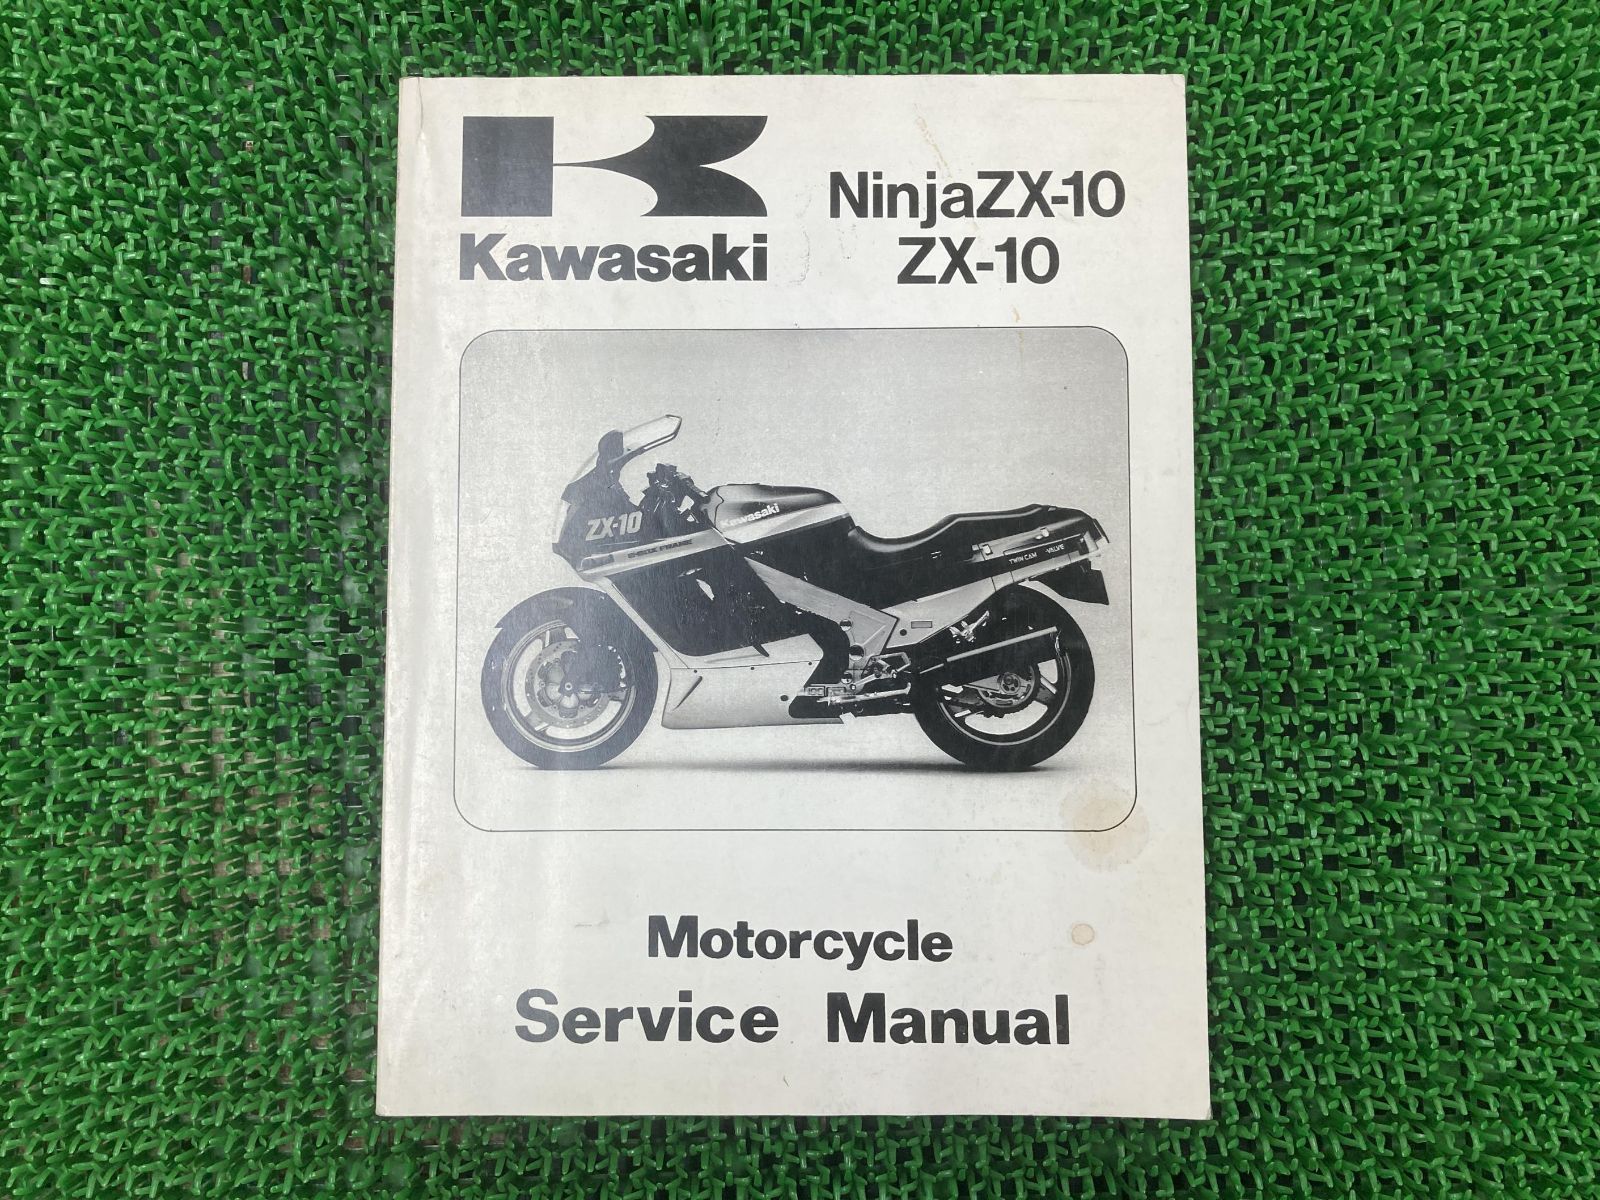 殿堂殿堂KAWASAKI KAWASAKI:カワサキ サービスマニュアル (基本版) ZX-10RR KAWASAKI カワサキ メンテナンス用品 